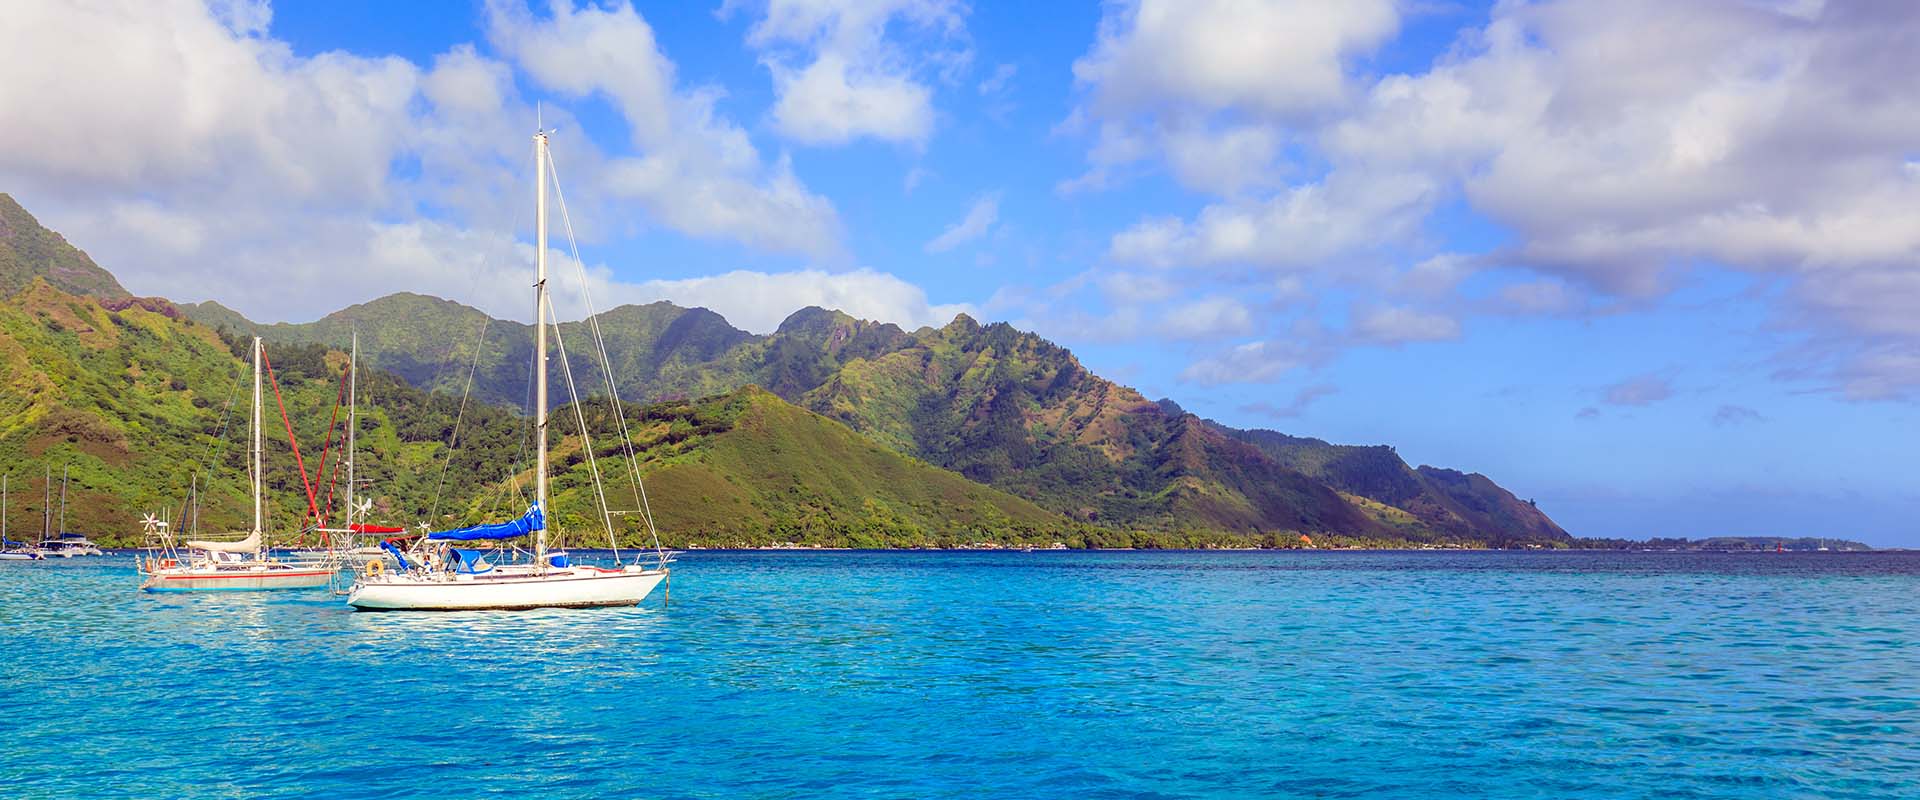 French Polynesia Adventure Cruises